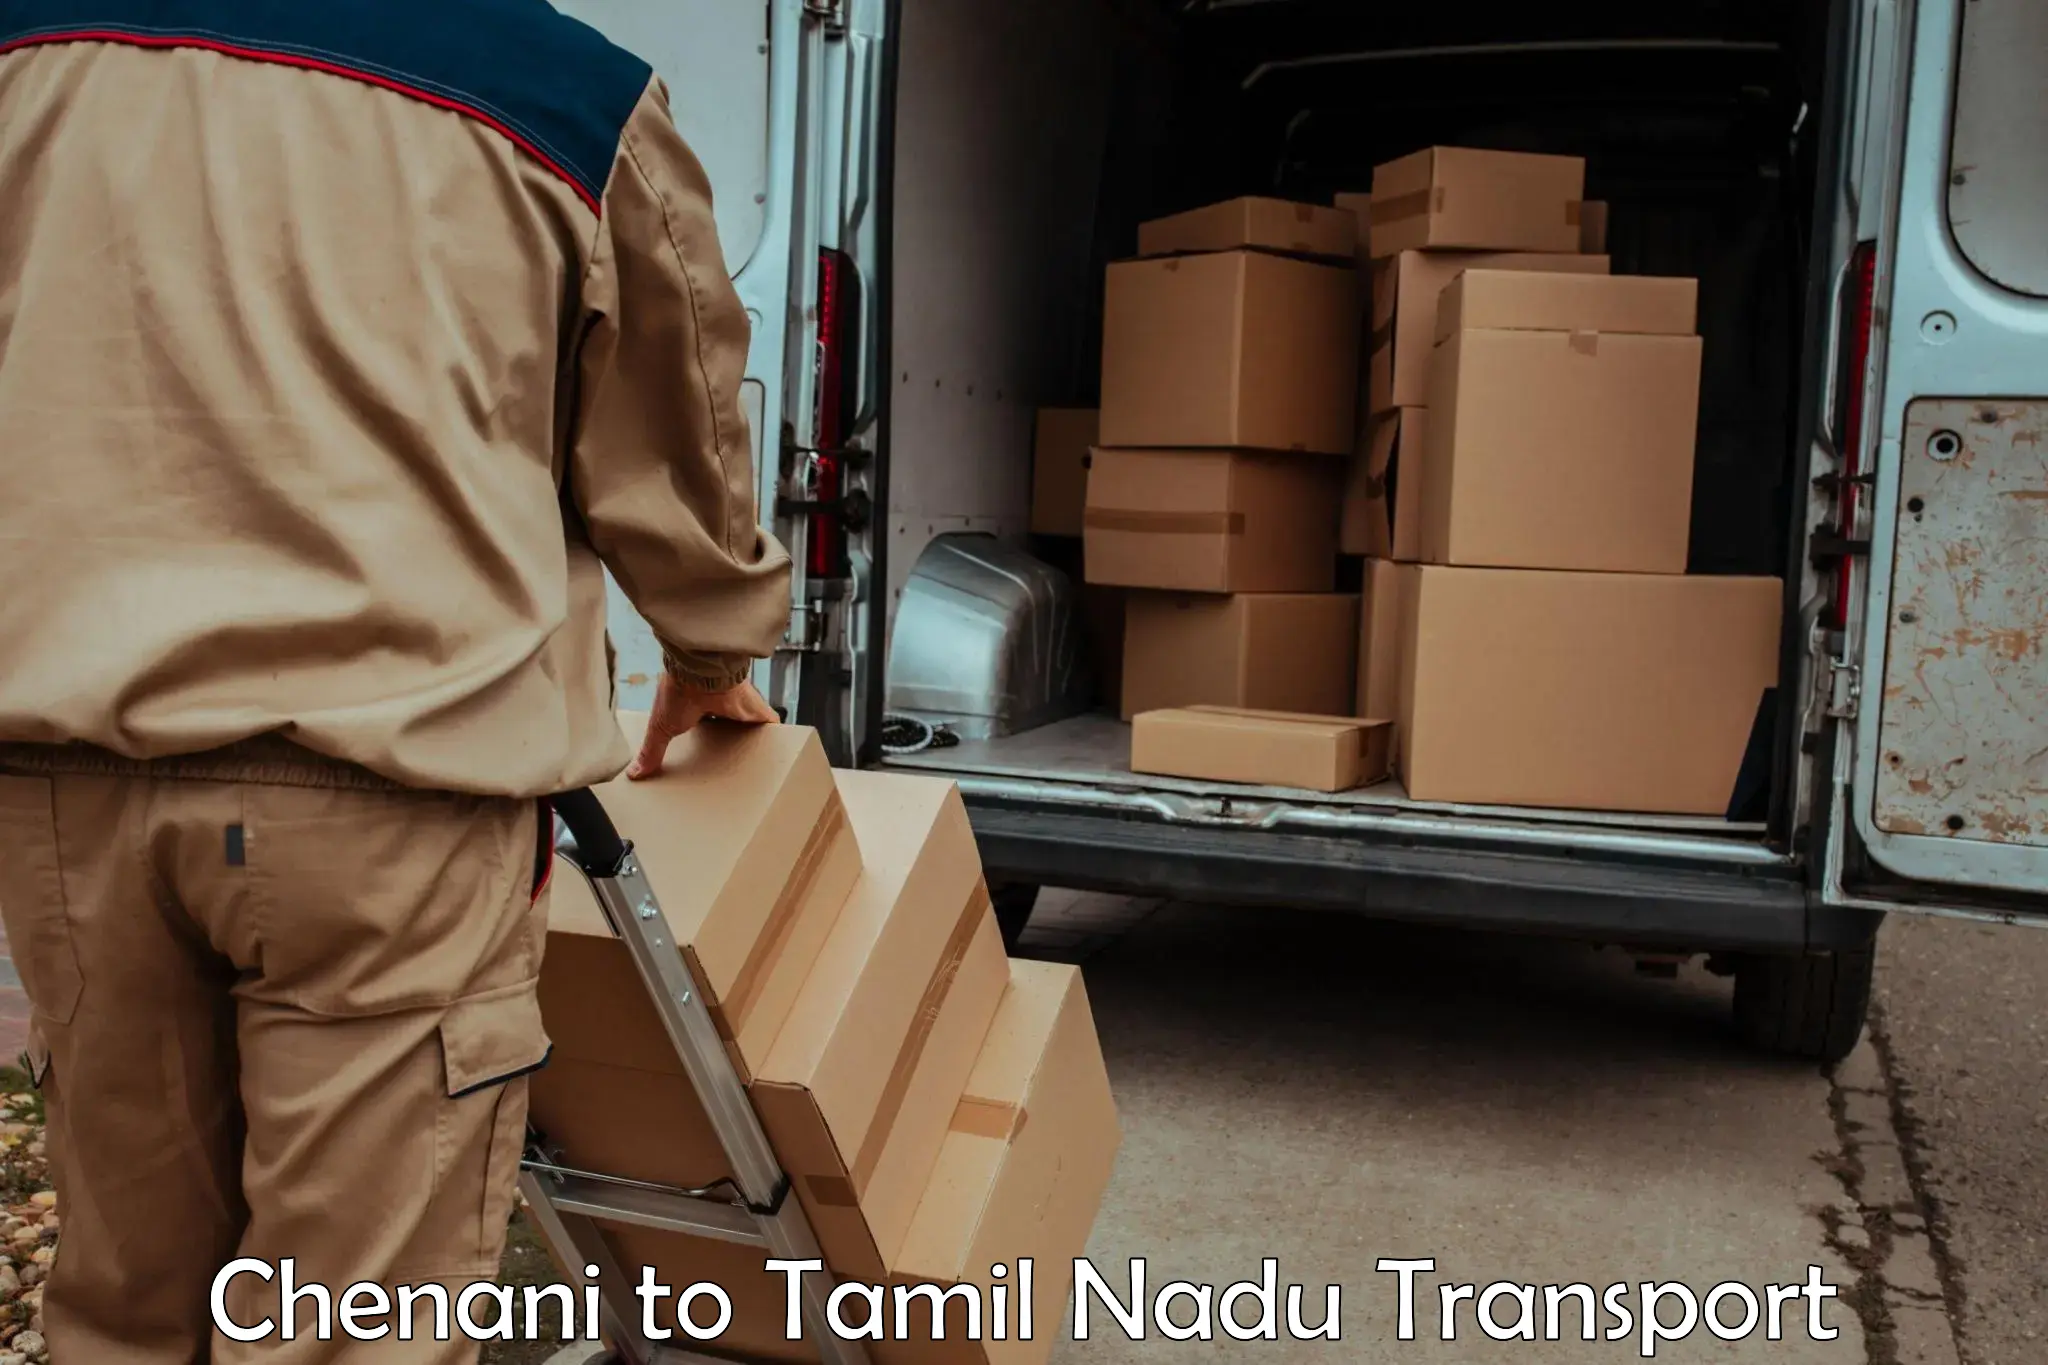 Lorry transport service Chenani to Chennai